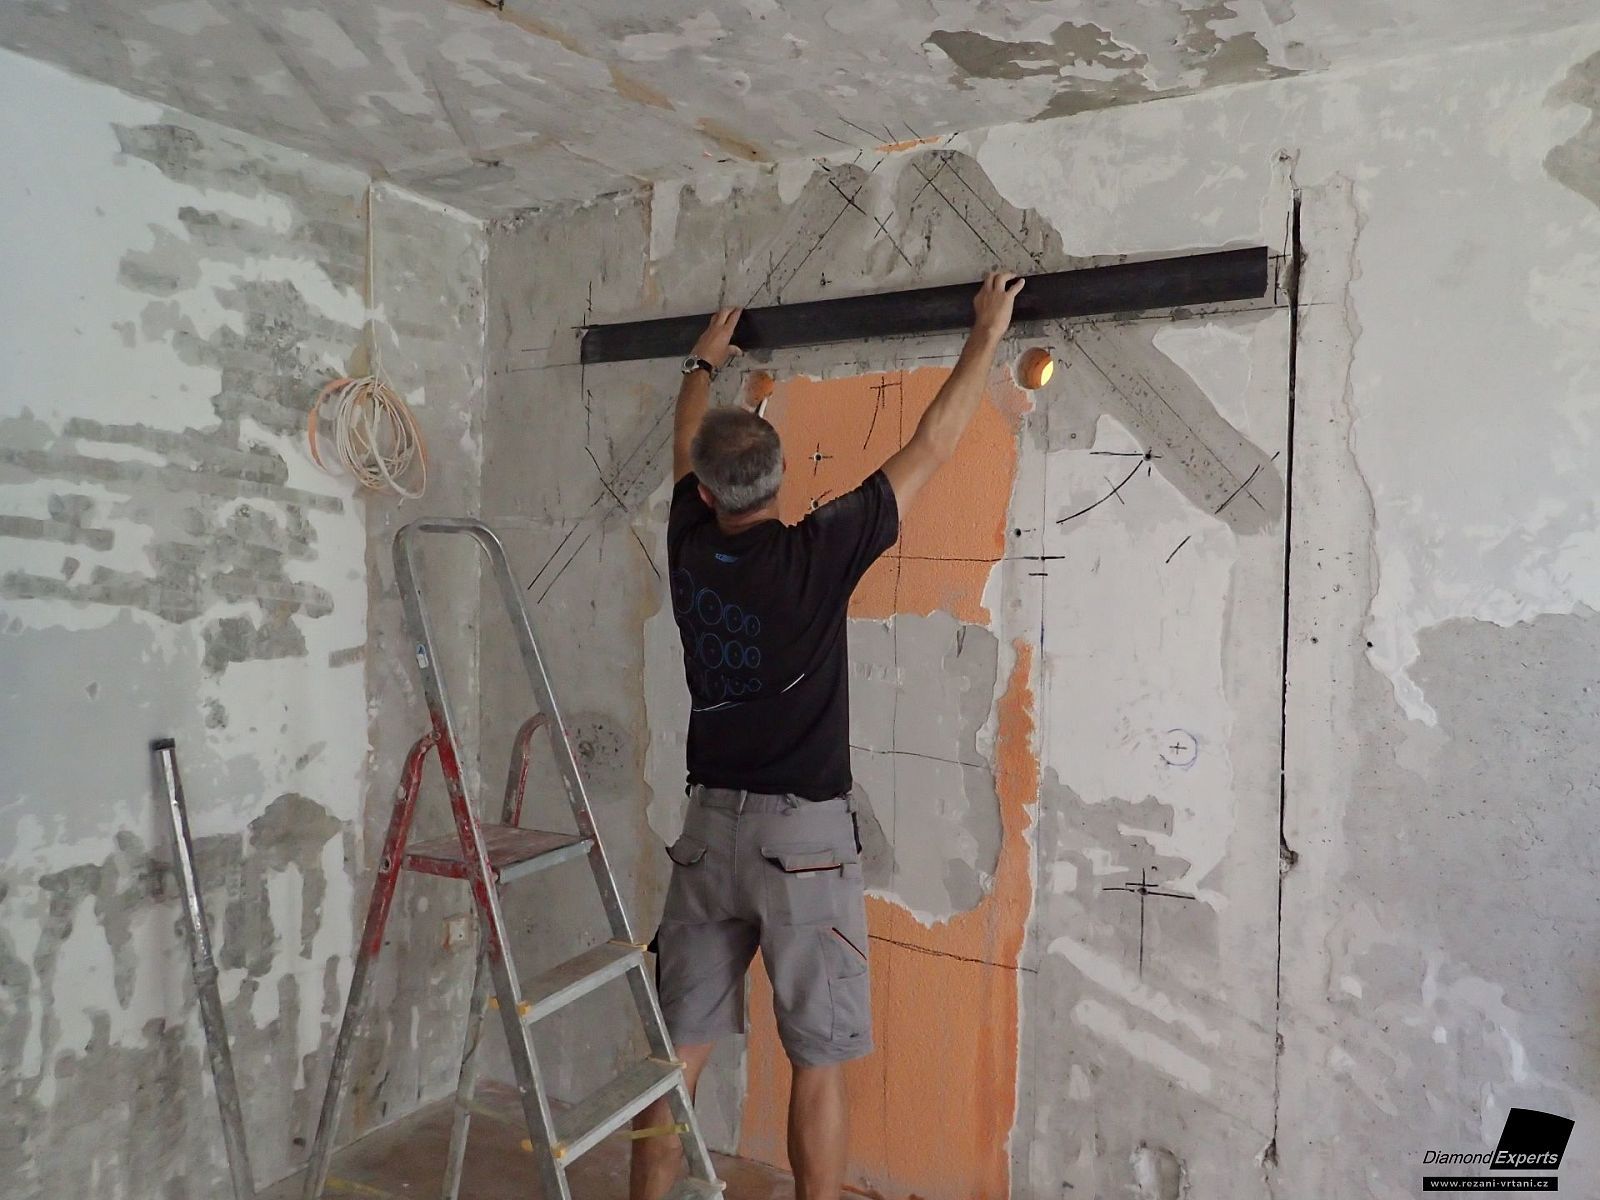 Řezání stěny v panelovém domě aplikace CFRP uhlíkových lamel